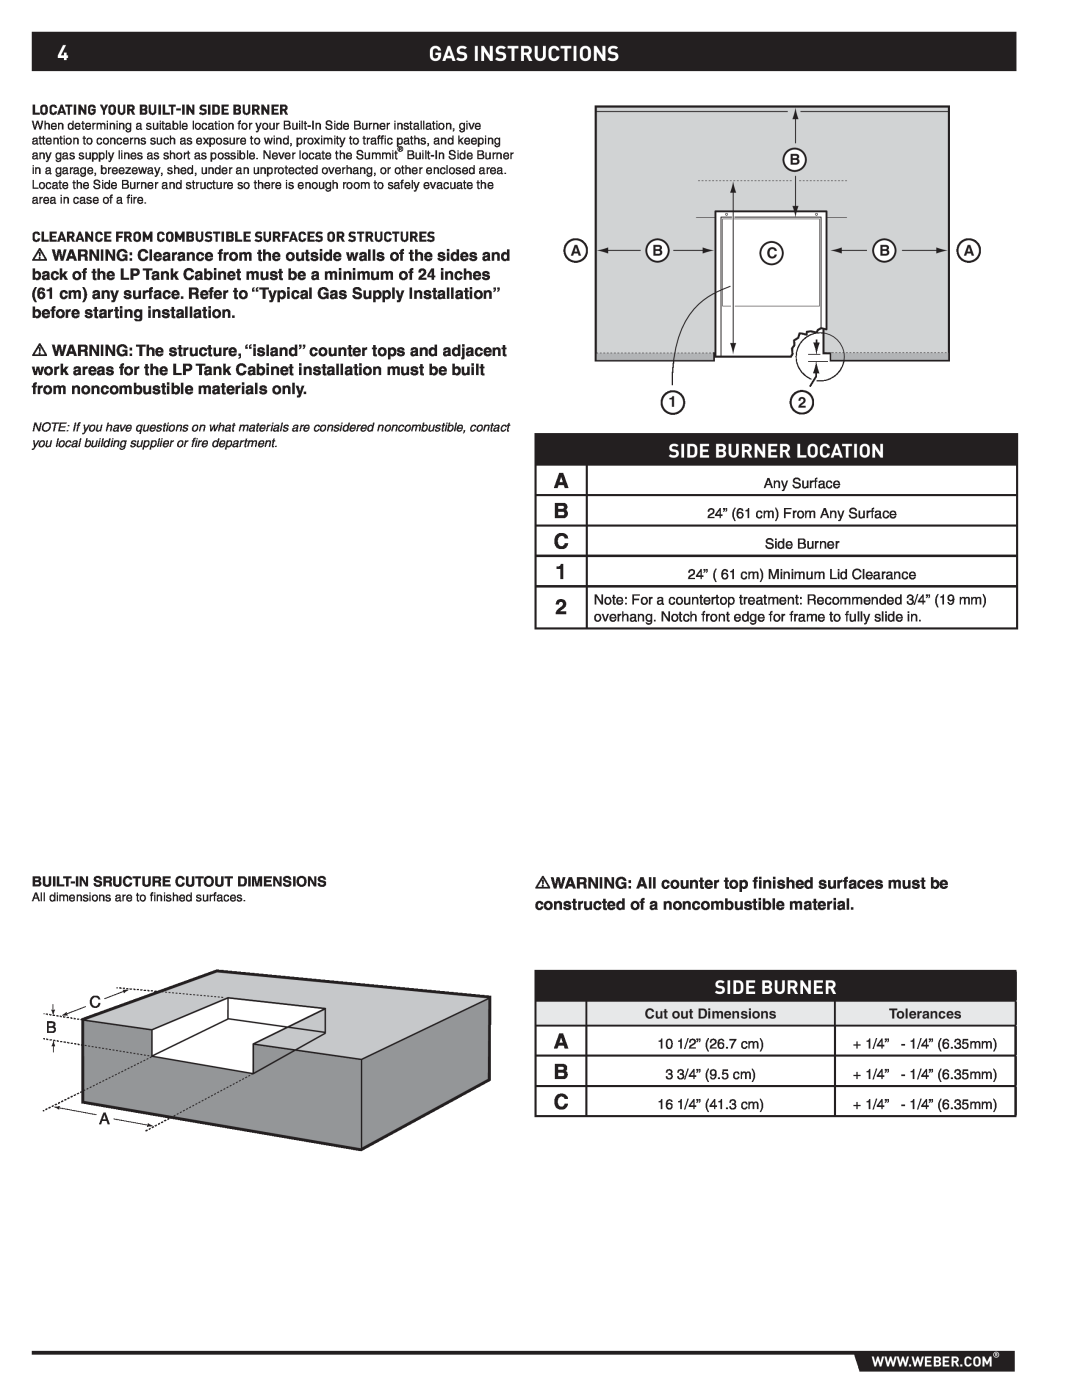 Weber 89796 manual Gas Instructions, Side Burner Location 